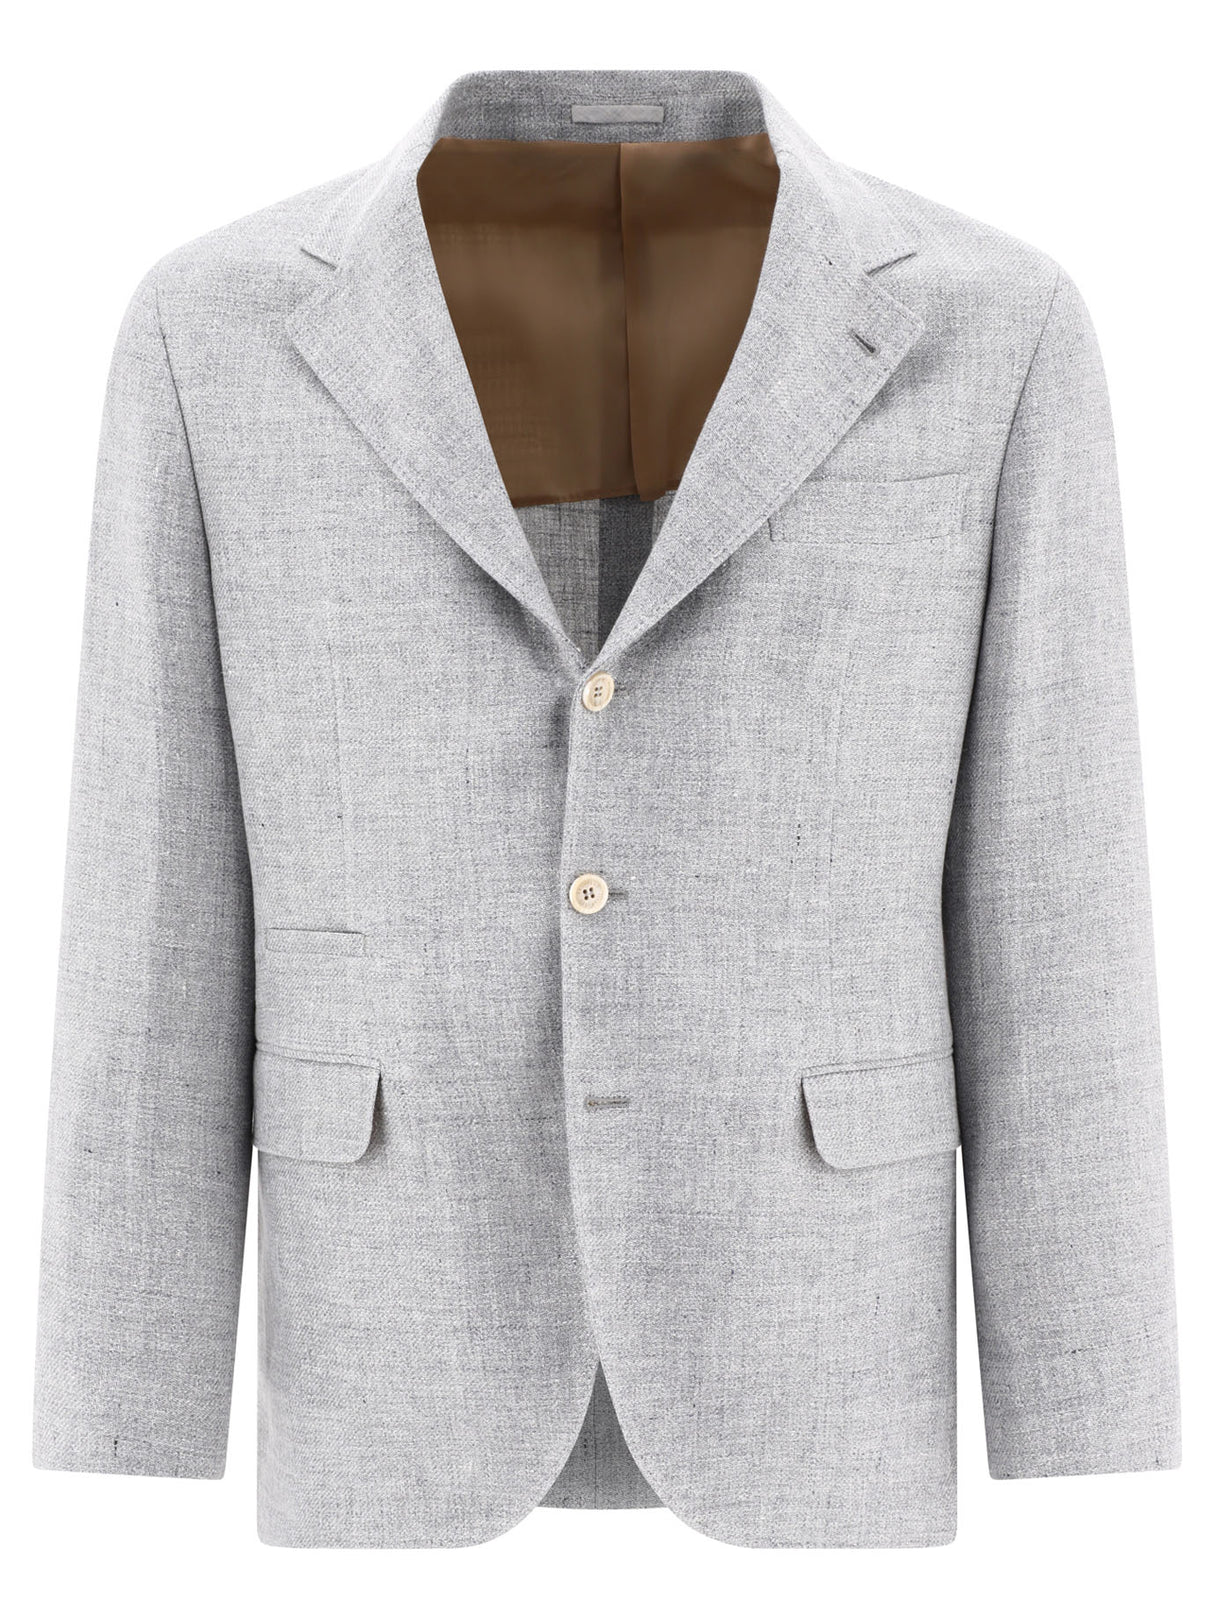 Áo blazer đơn giản cho nam giới - Cỡ vừa vặn, màu xám, SS24